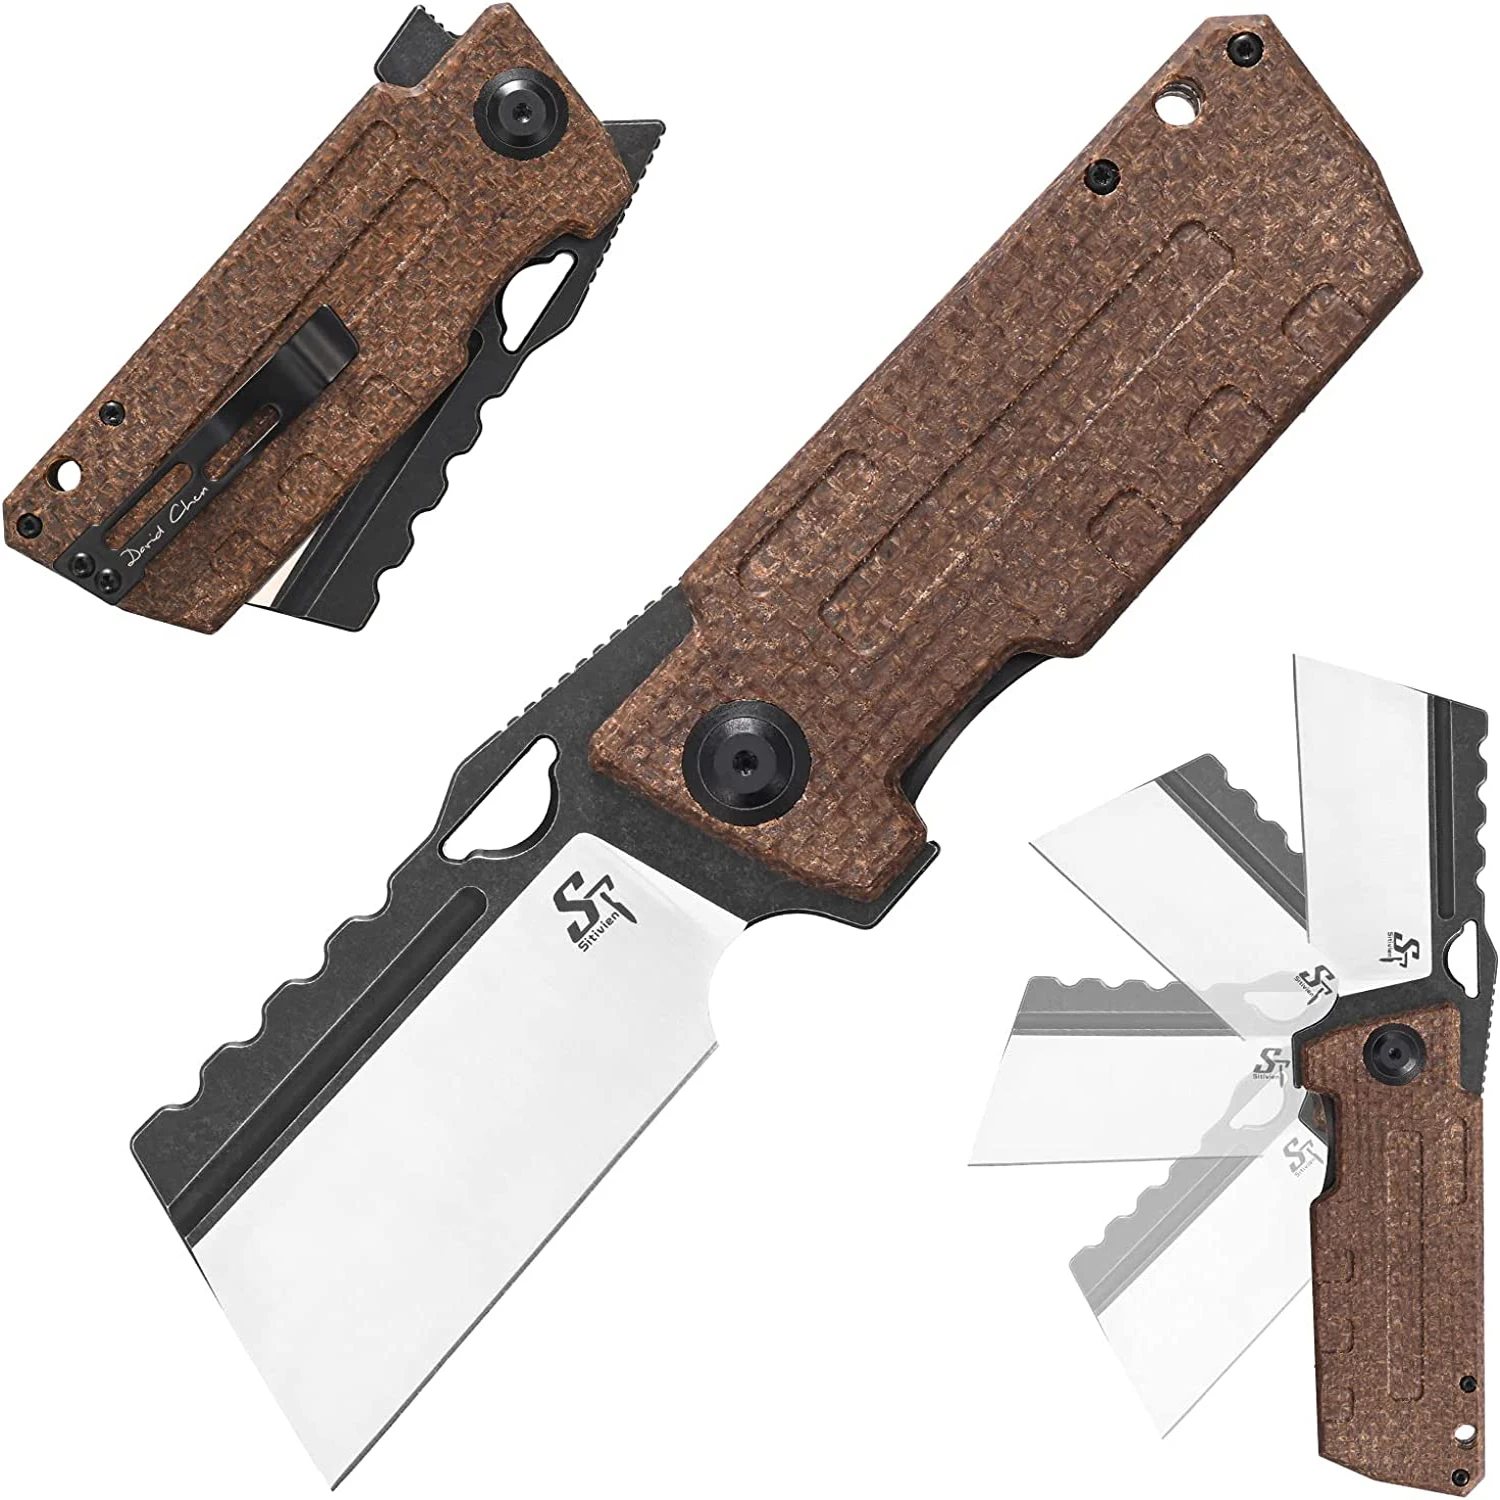 Sitivien ST155 Pocket Folding Knife Sandvik 14C28N Steel Blade G10 Micarta Handle EDC Tool Knifes for